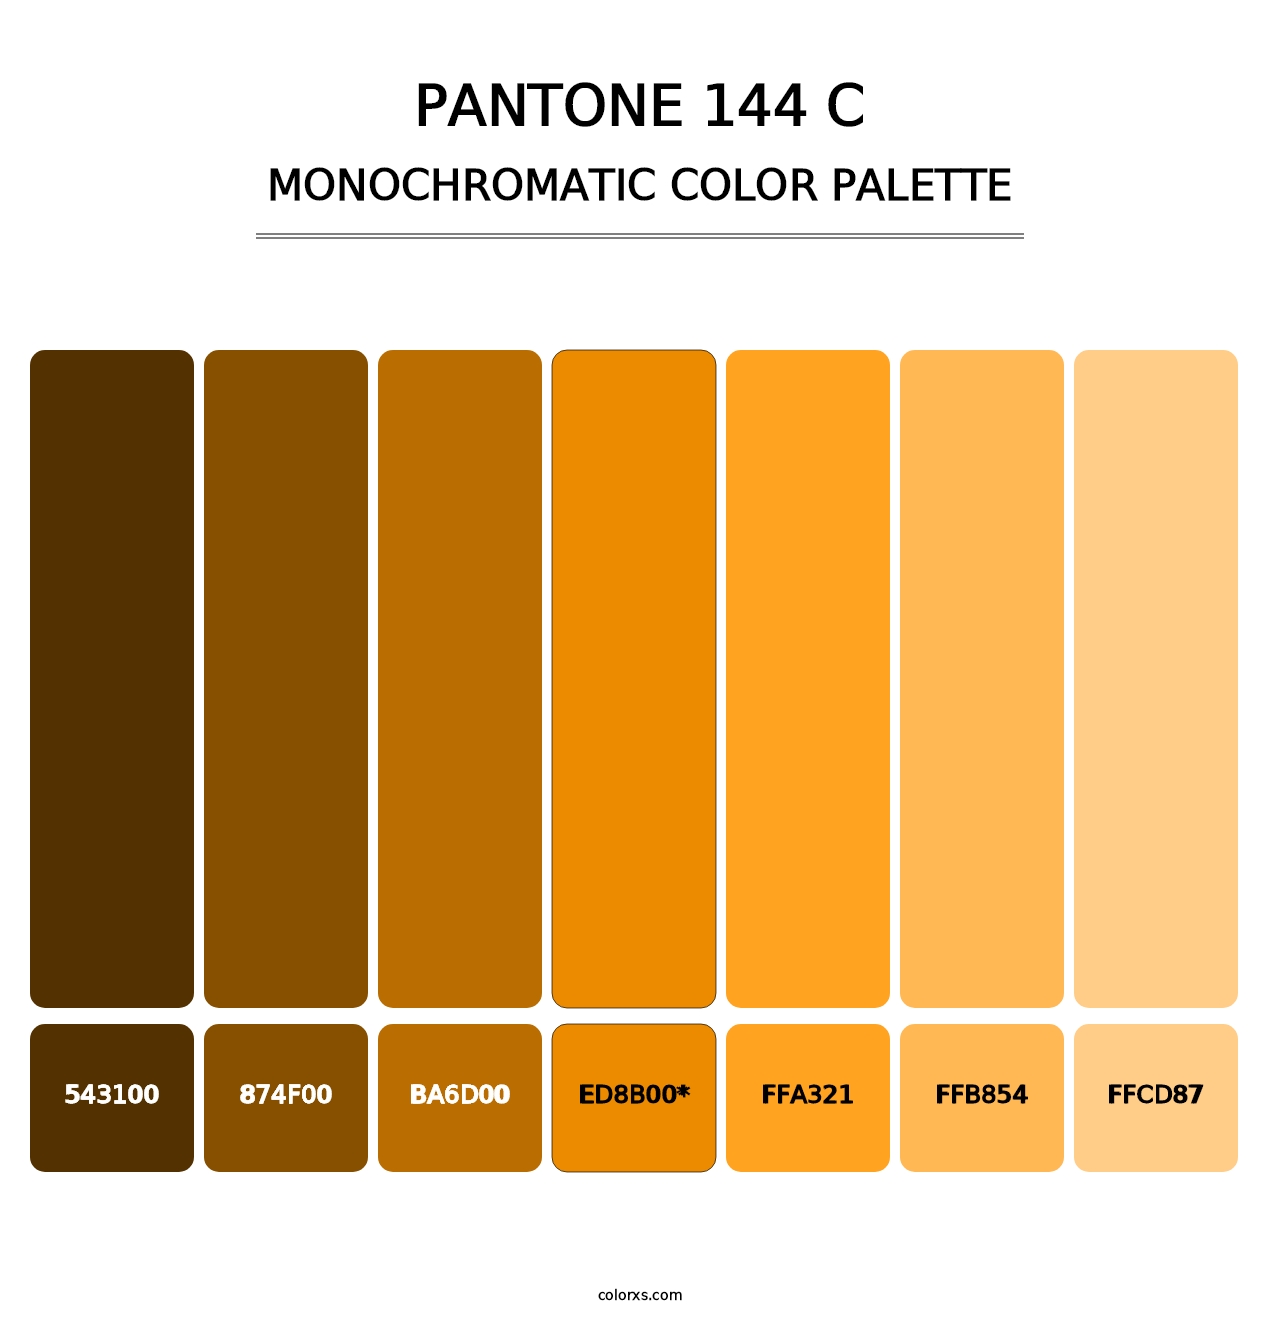 PANTONE 144 C - Monochromatic Color Palette